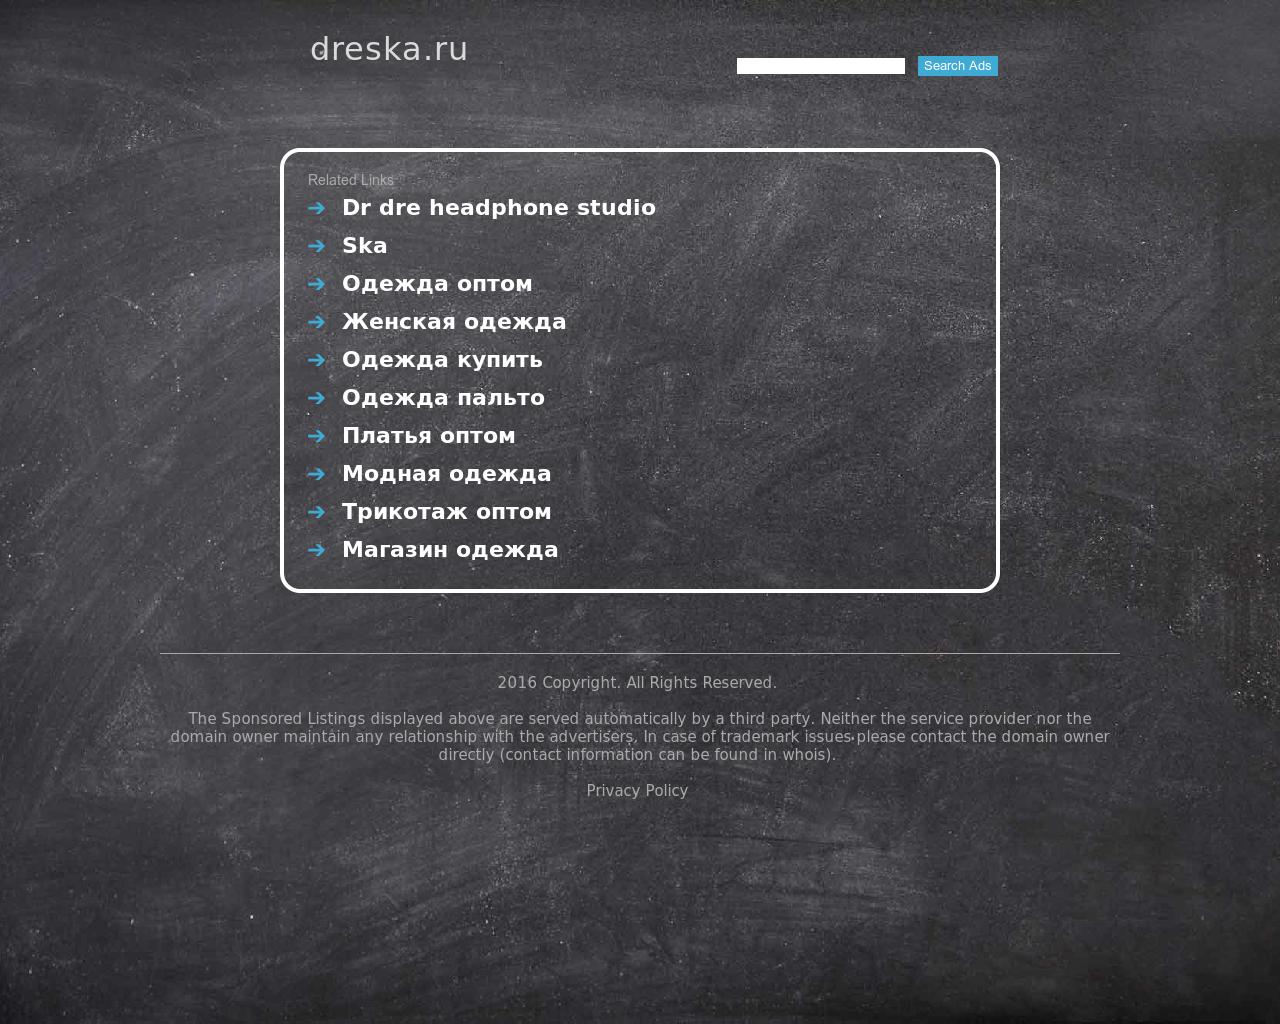 Изображение сайта dreska.ru в разрешении 1280x1024